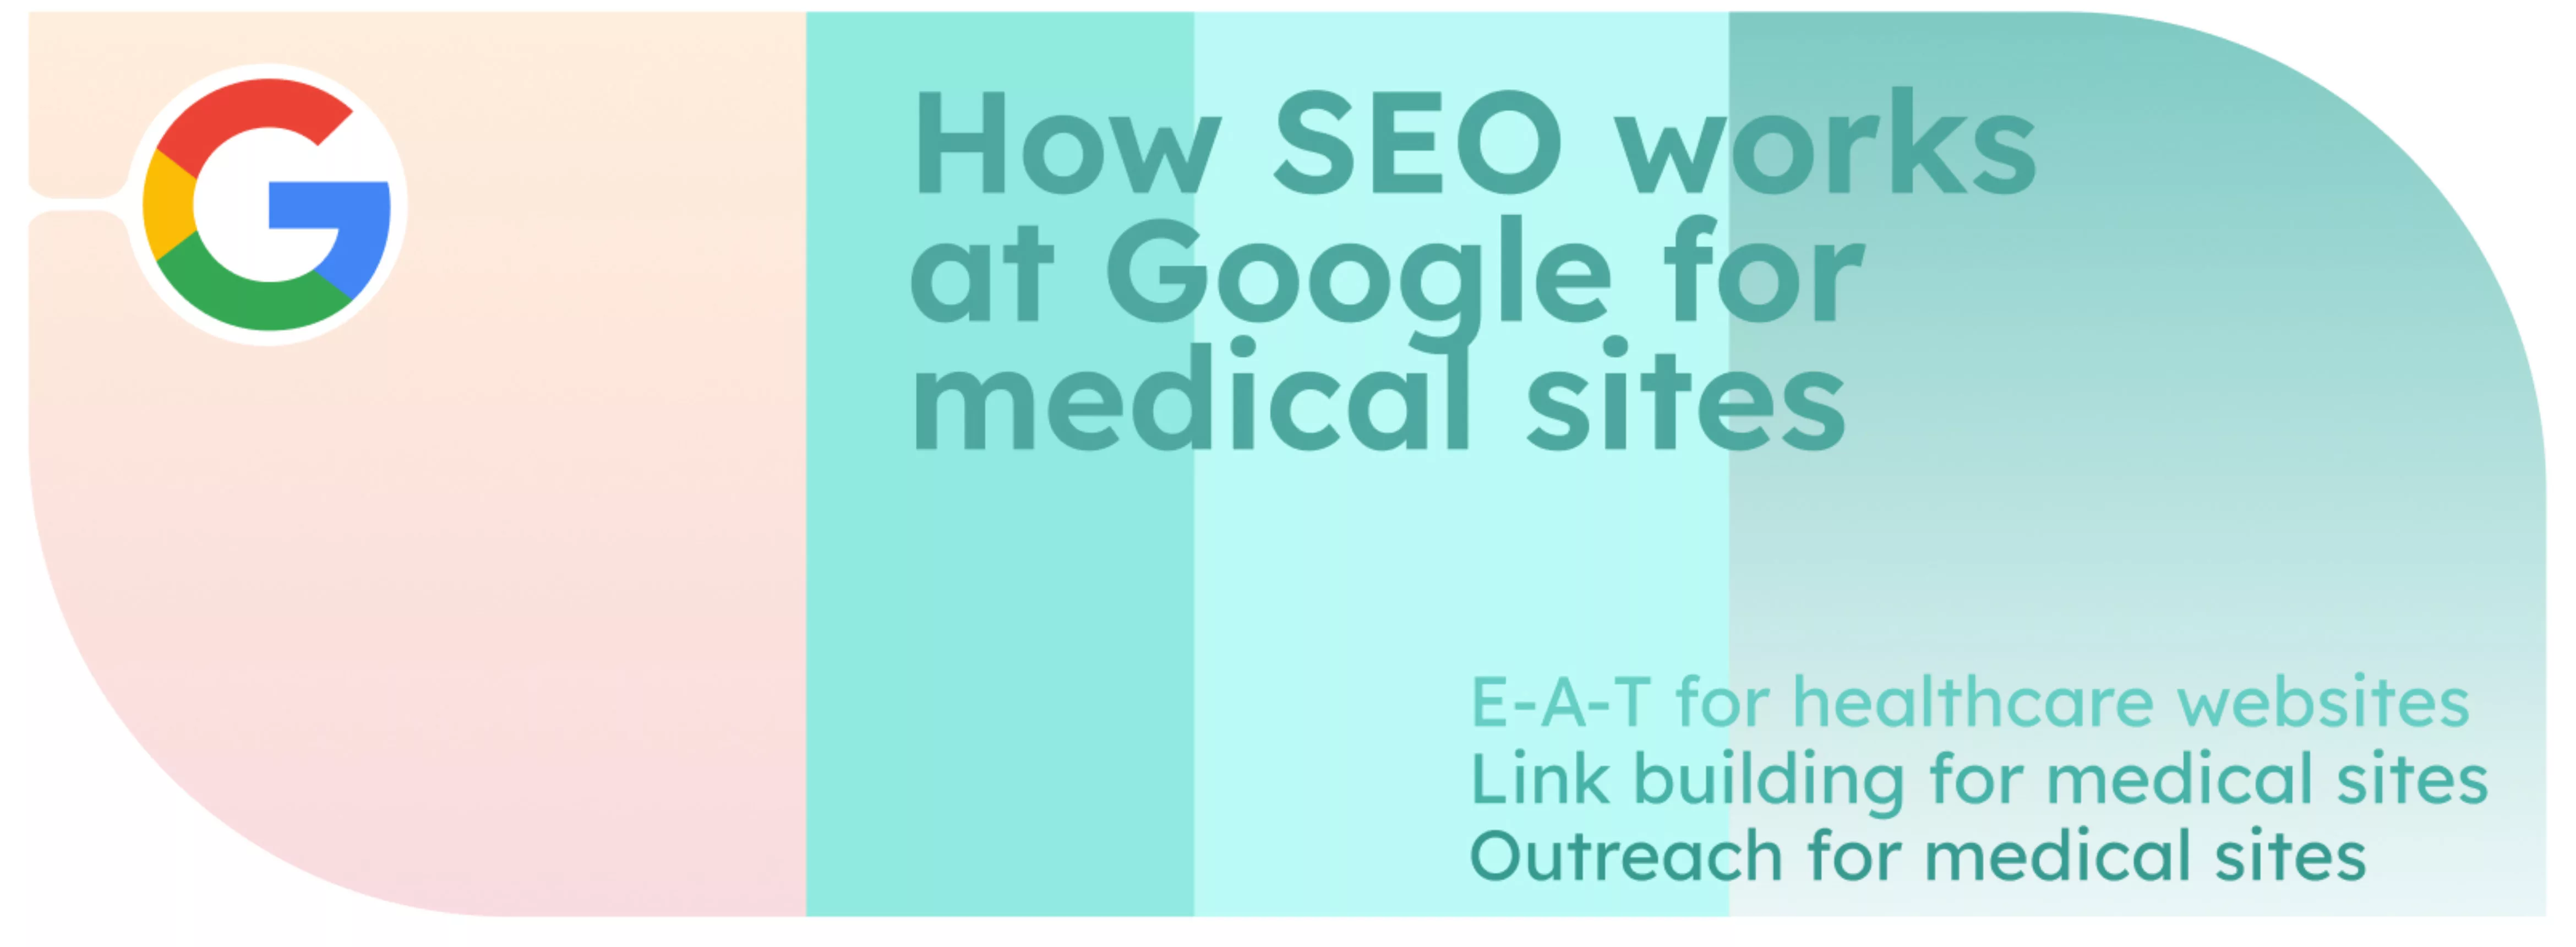 Comment fonctionne le référencement sur Google pour les sites médicaux